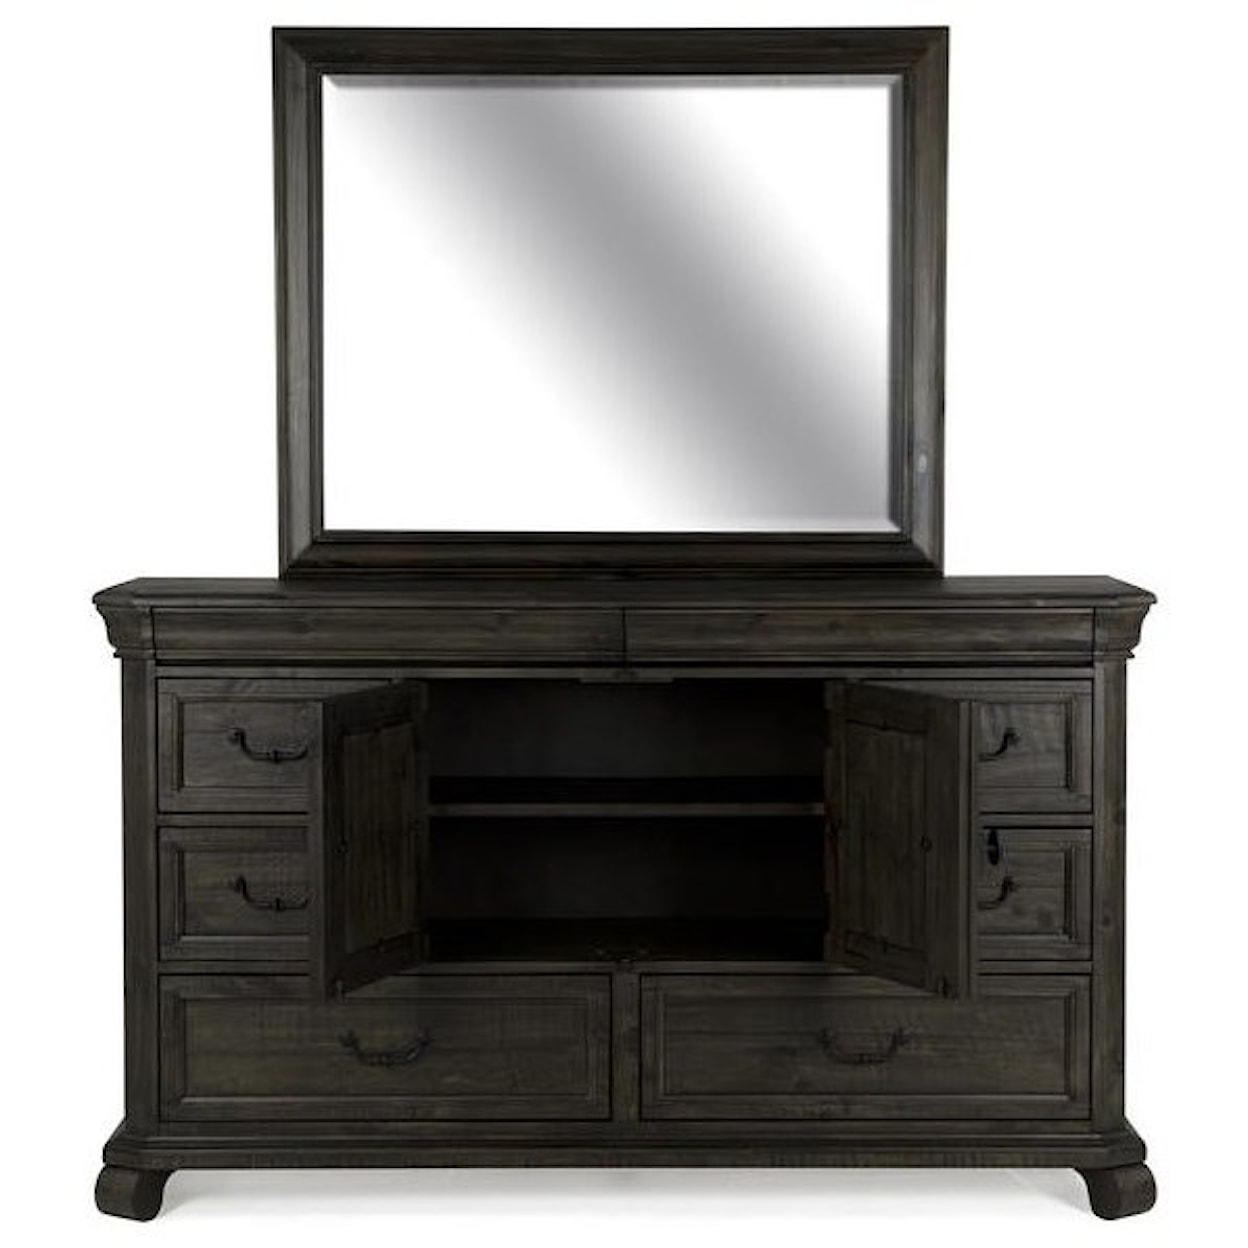 Magnussen Home Bellamy Bedroom Dresser and Mirror Set